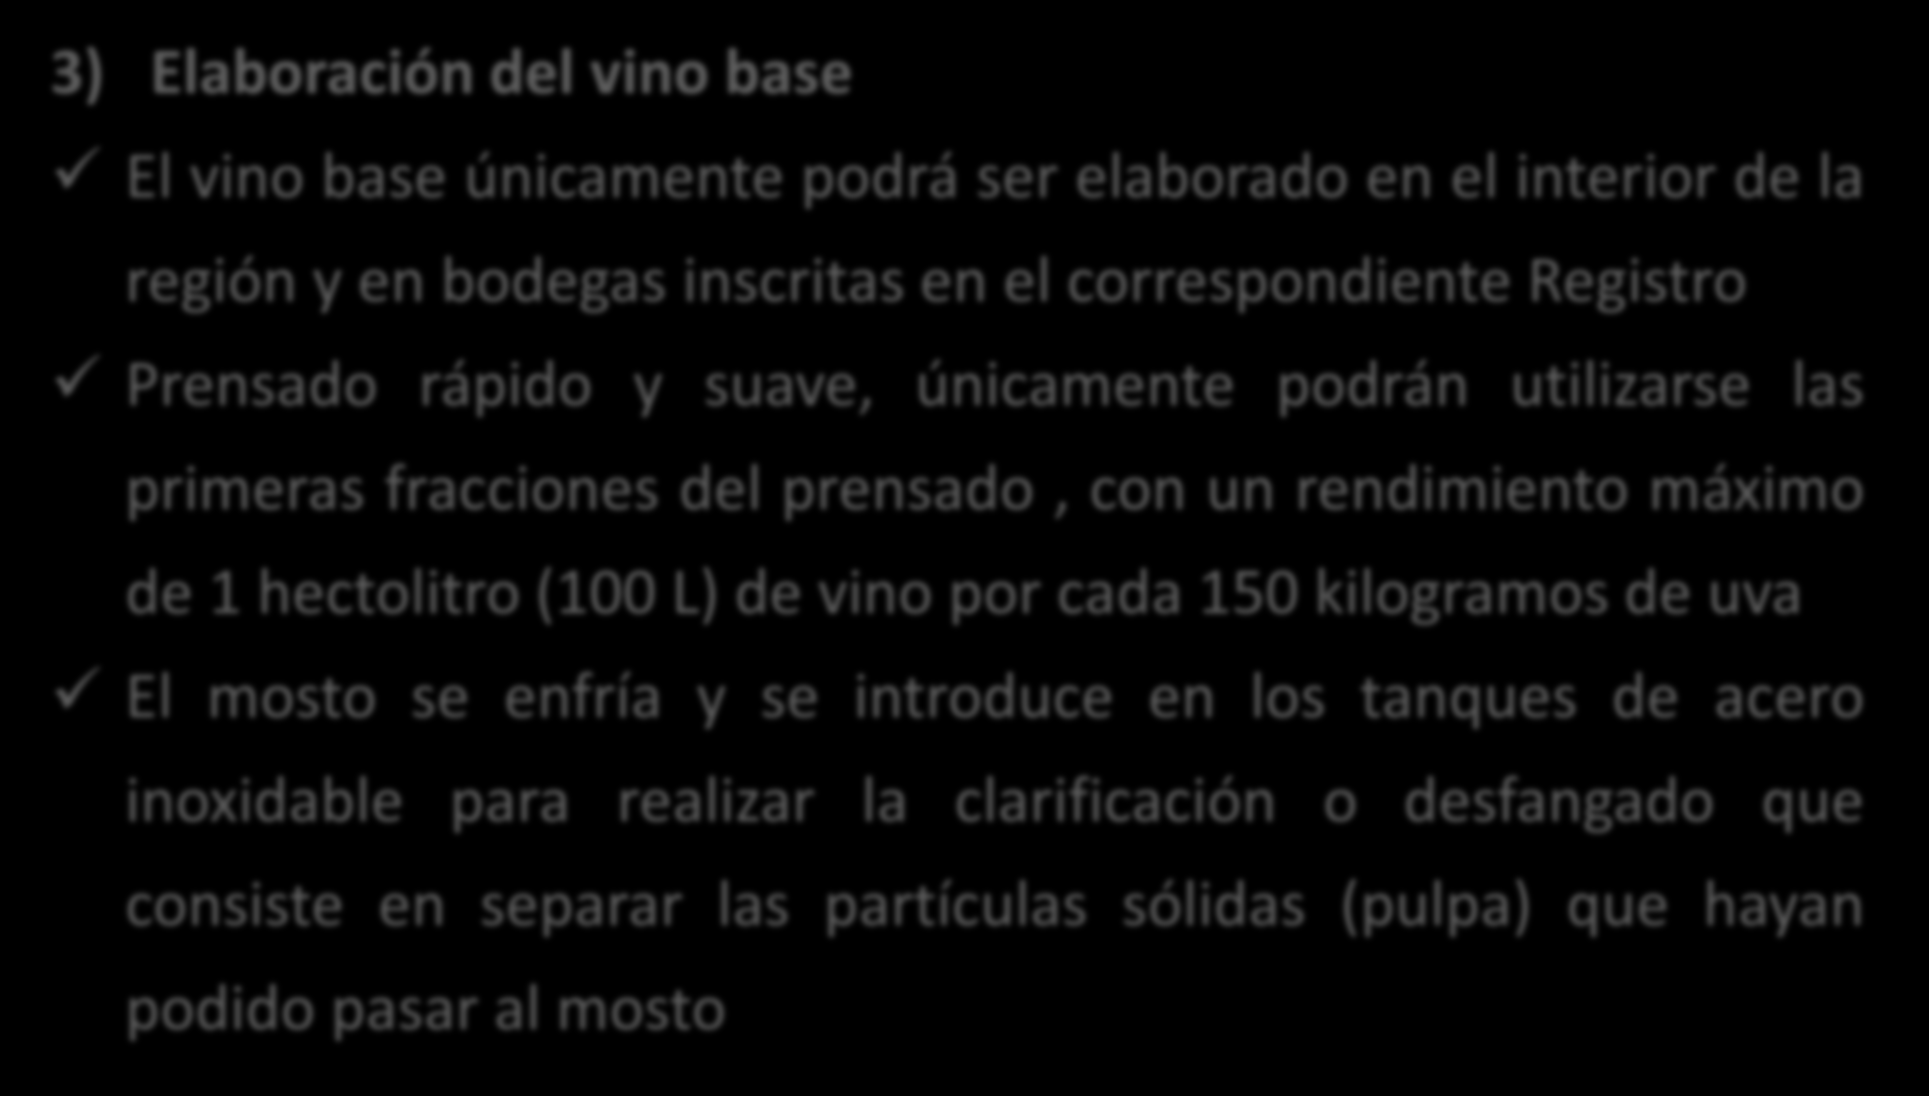 El rendimiento máximo autorizado por hectárea para la producción de «Cava» será de 120 quintales métricos (100 kg = 1 quintal métrico) 3) Elaboración del vino base El vino base únicamente podrá ser